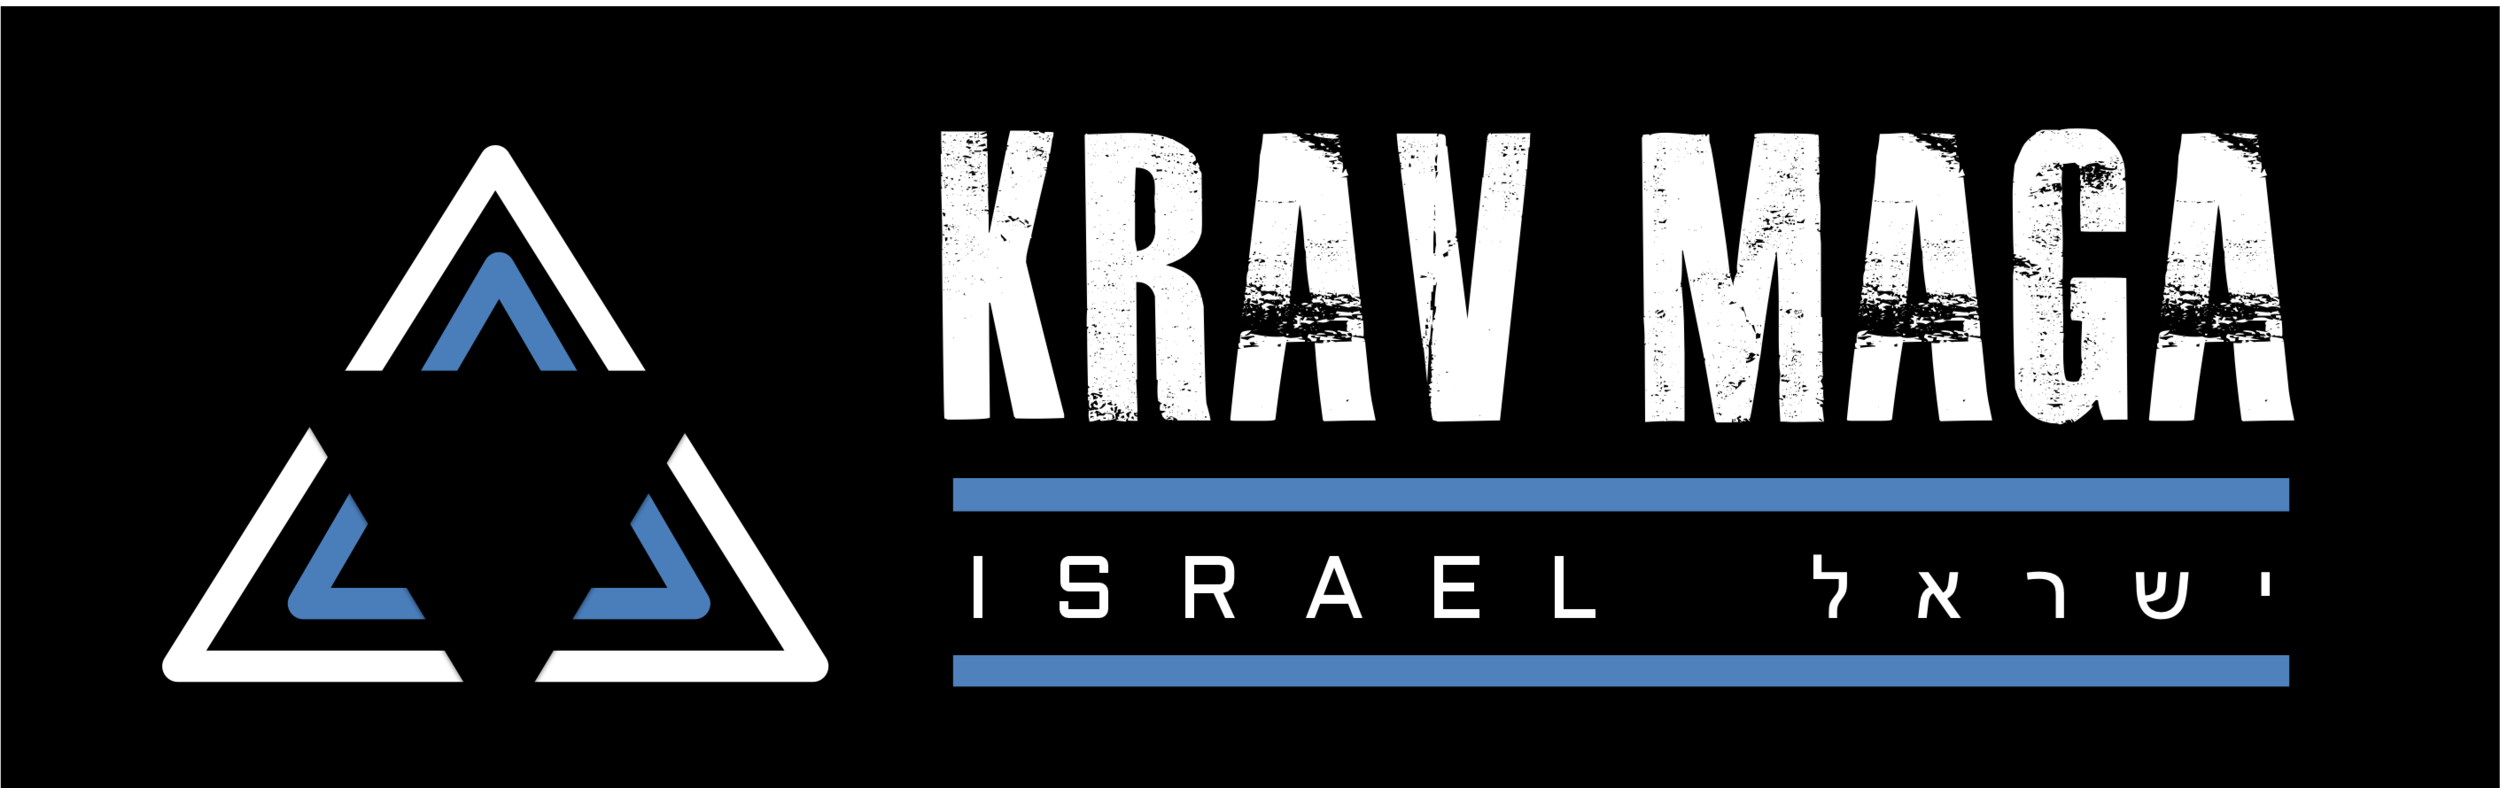 SHOP KRAV MAGA Pantalon Israel Kravmaga Self Defence Training AB004 